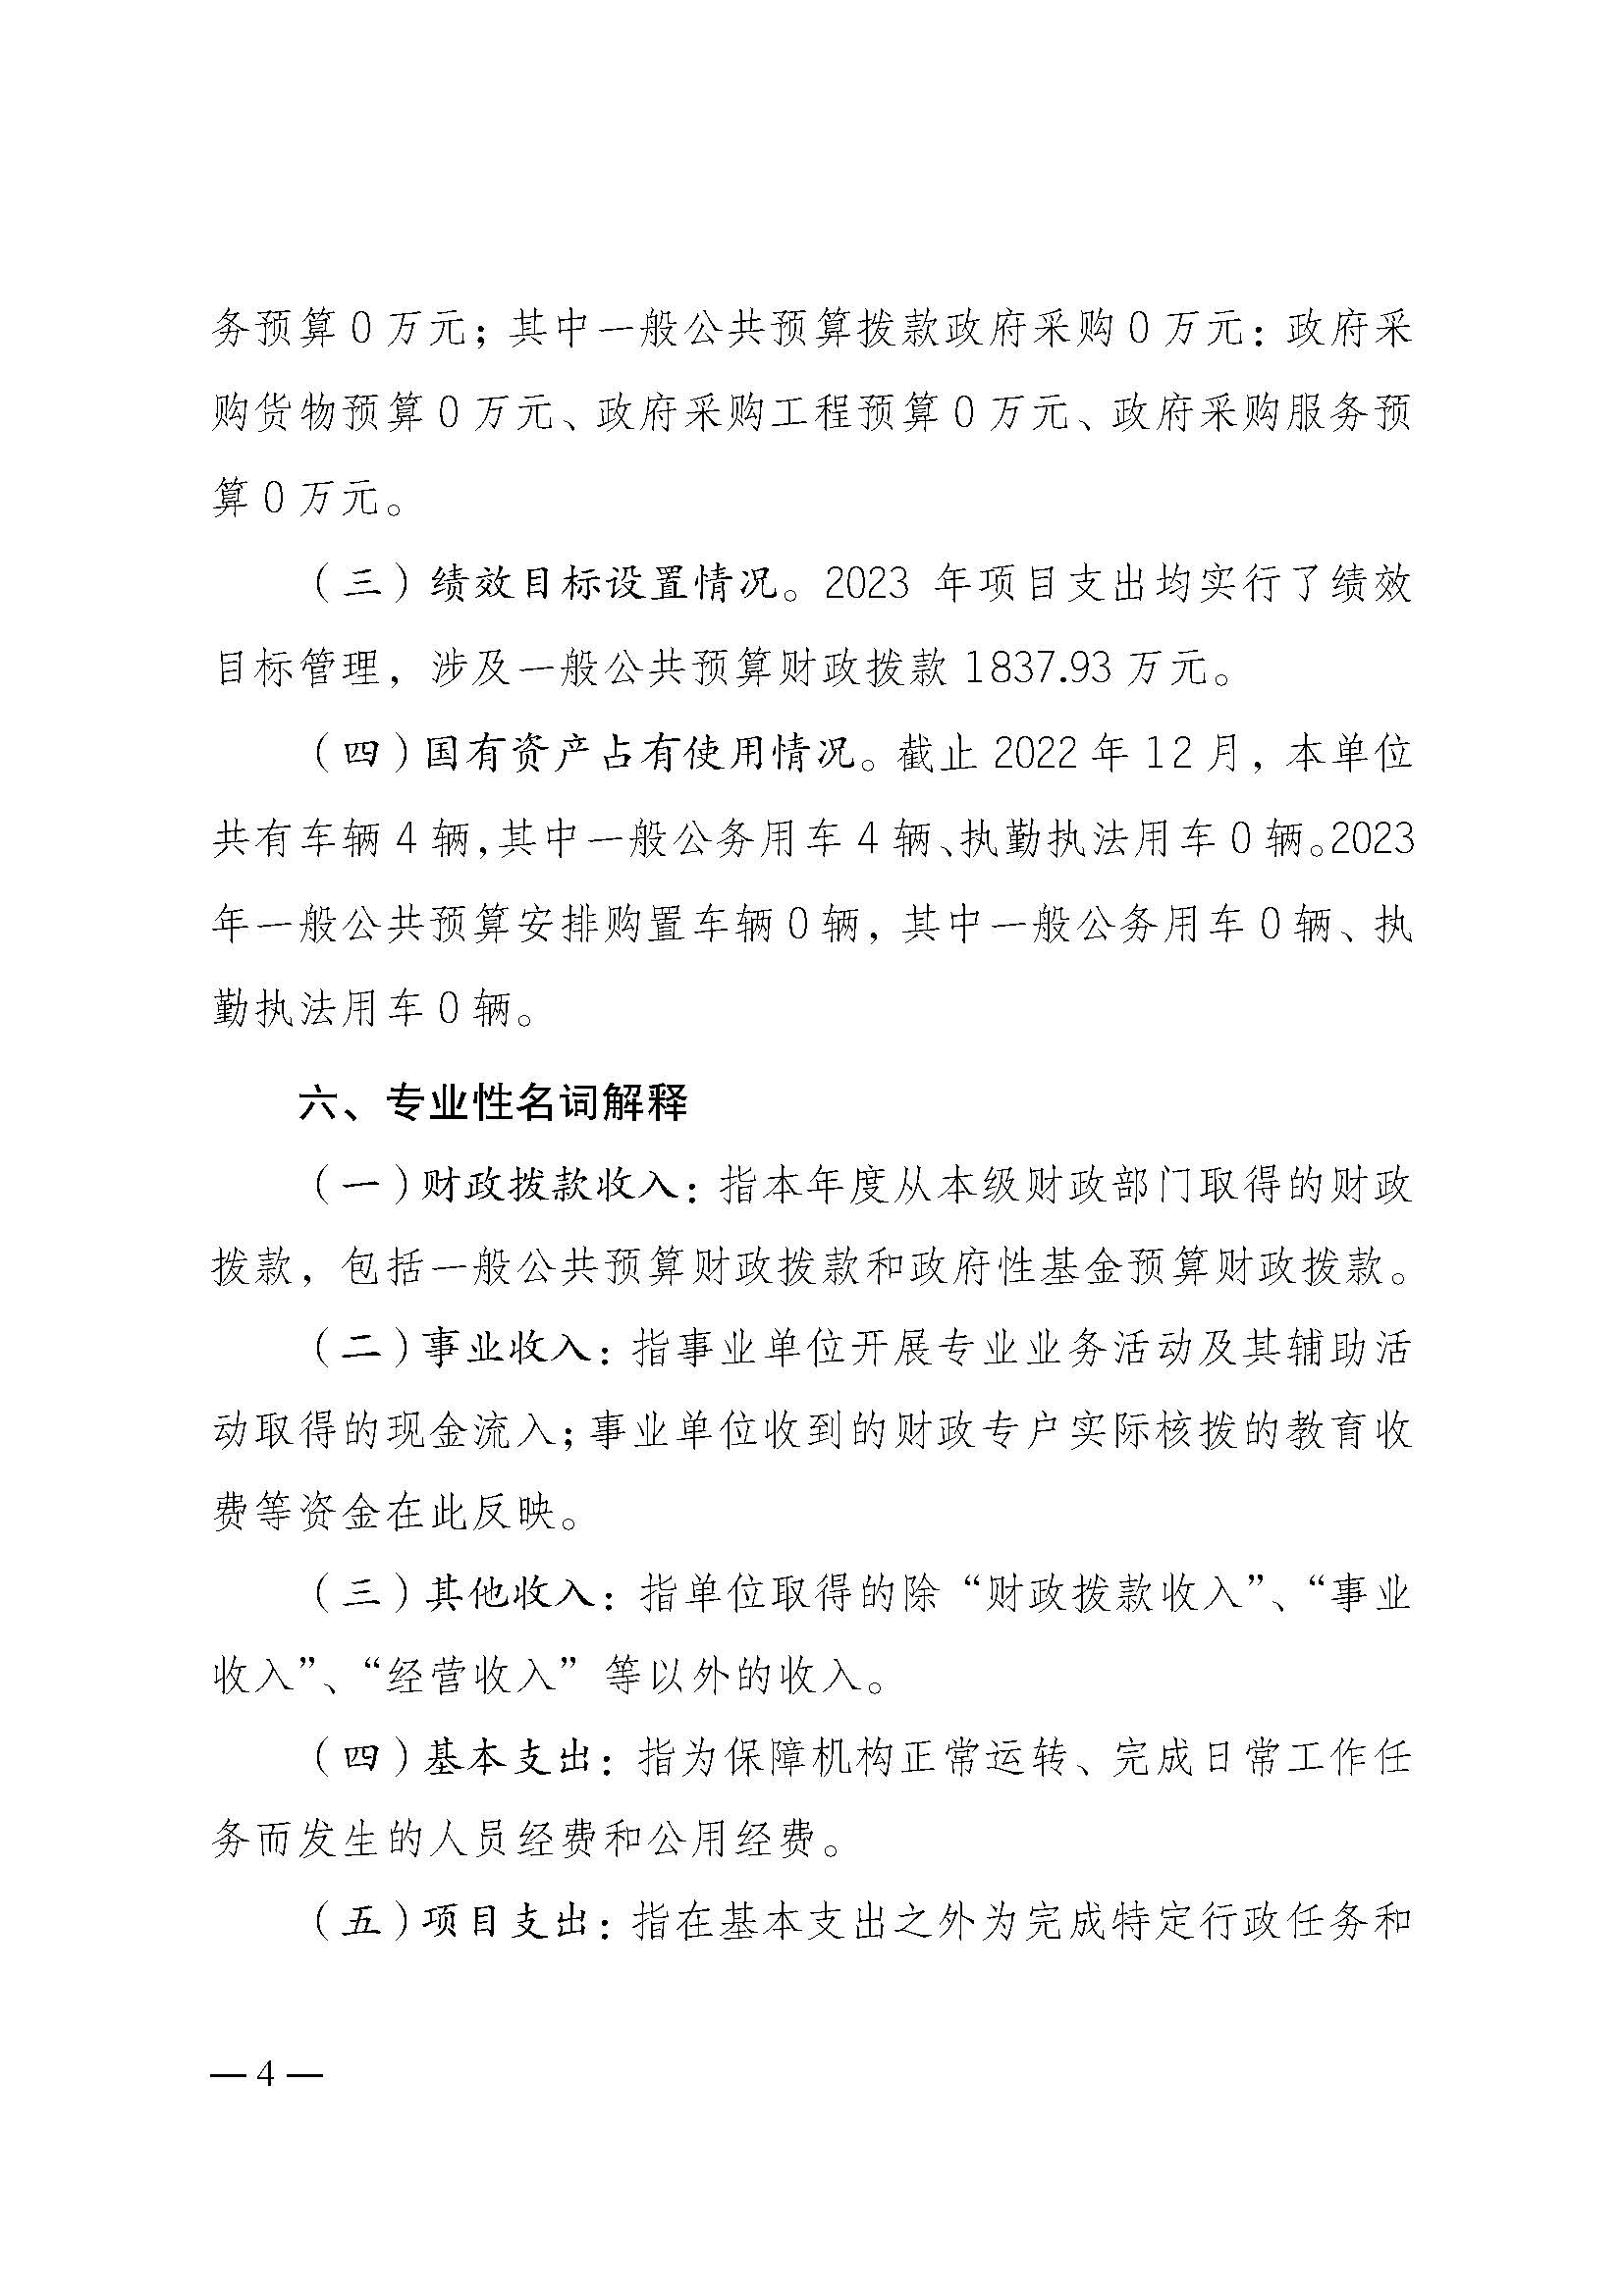 2023年单位预算公开说明（重庆市儿童福利院）_页面_4.jpg